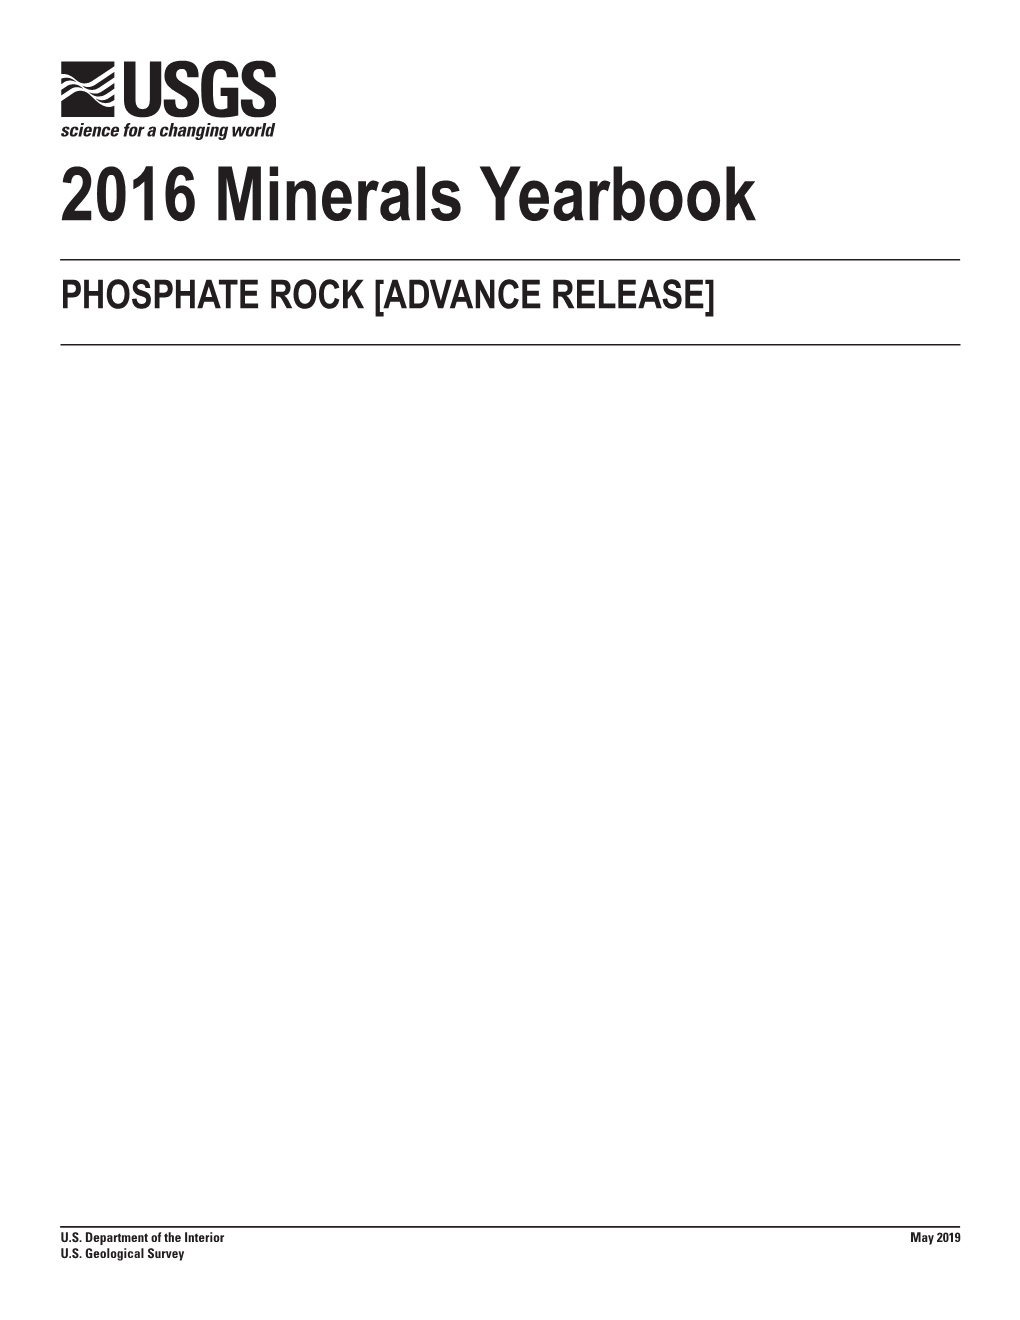 Phosphate Rock 2016